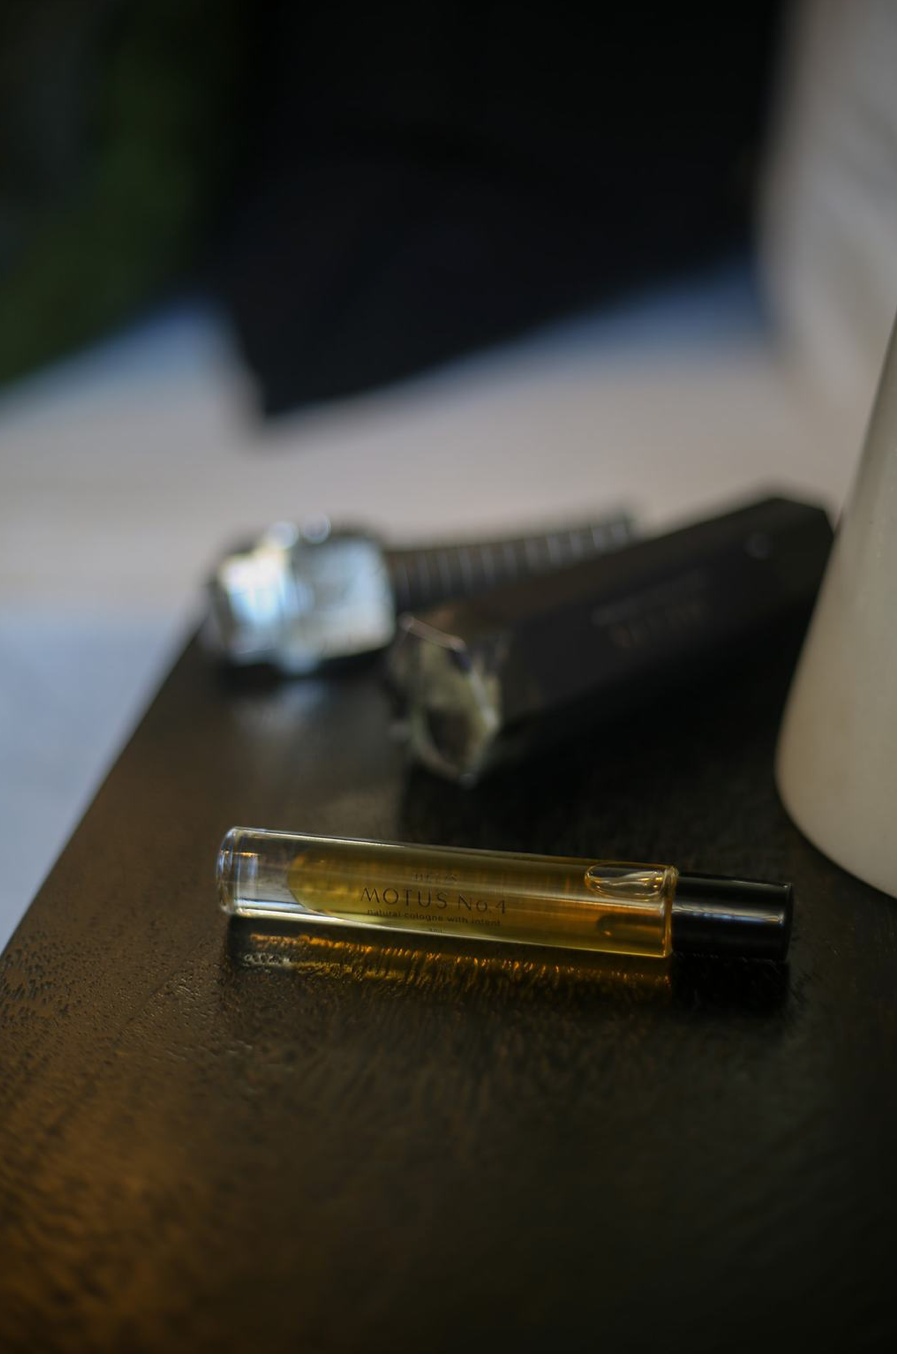 Motus no.4 (motivate) - unisex perfume oil